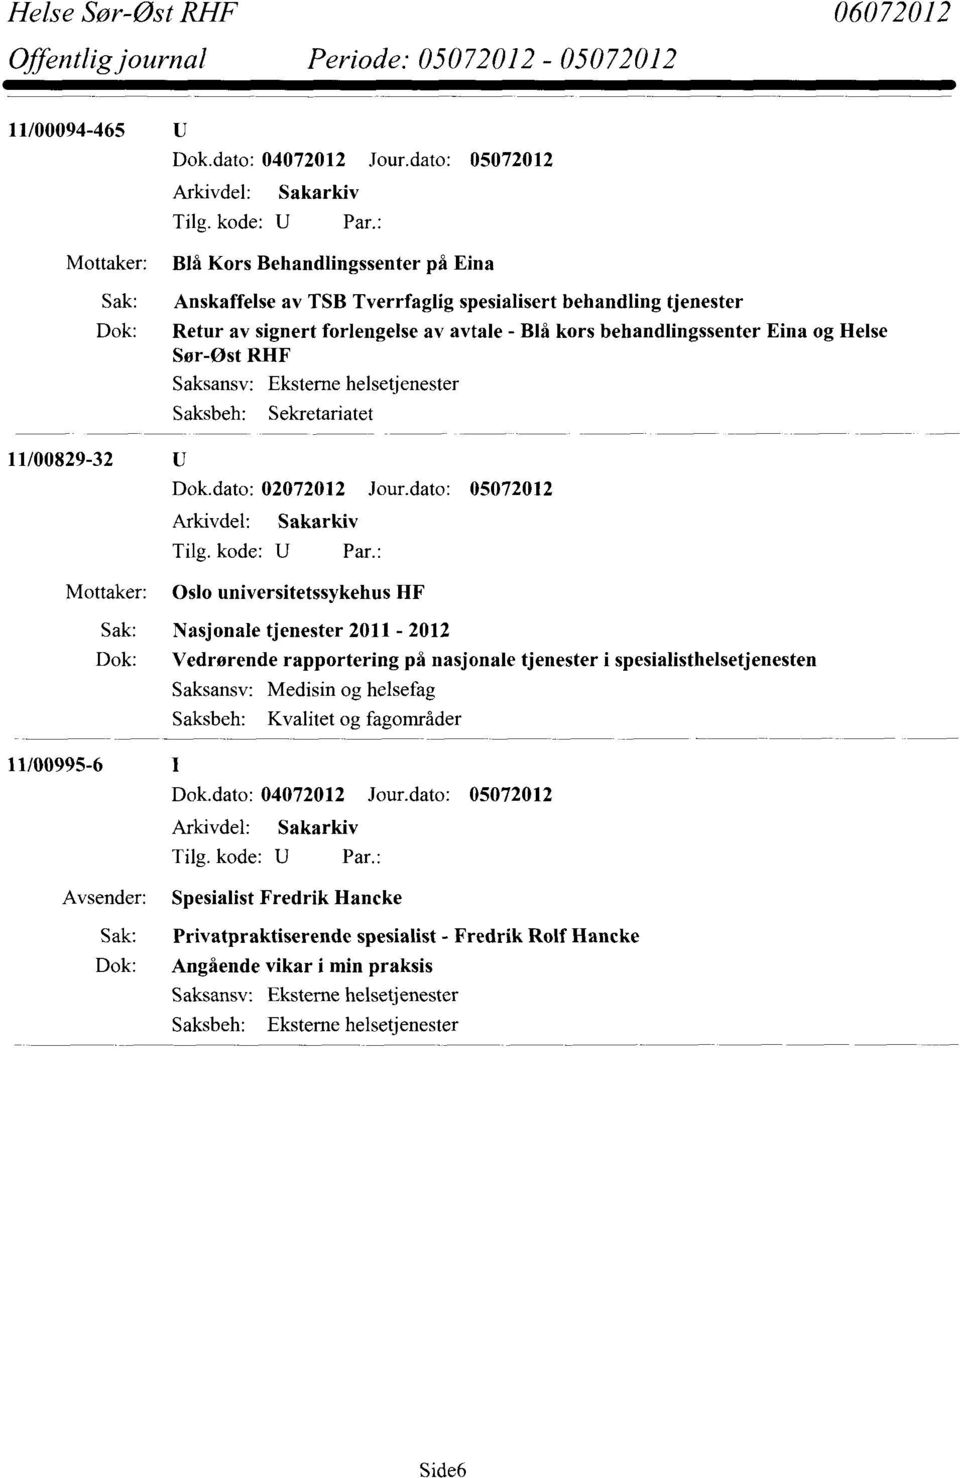 dato: 05072012 Oslo universitetssykehus HF Sak: Nasjonale tjenester 2011-2012 Dok: Vedrørende rapportering på nasjonale tjenester i spesialisthelsetjenesten